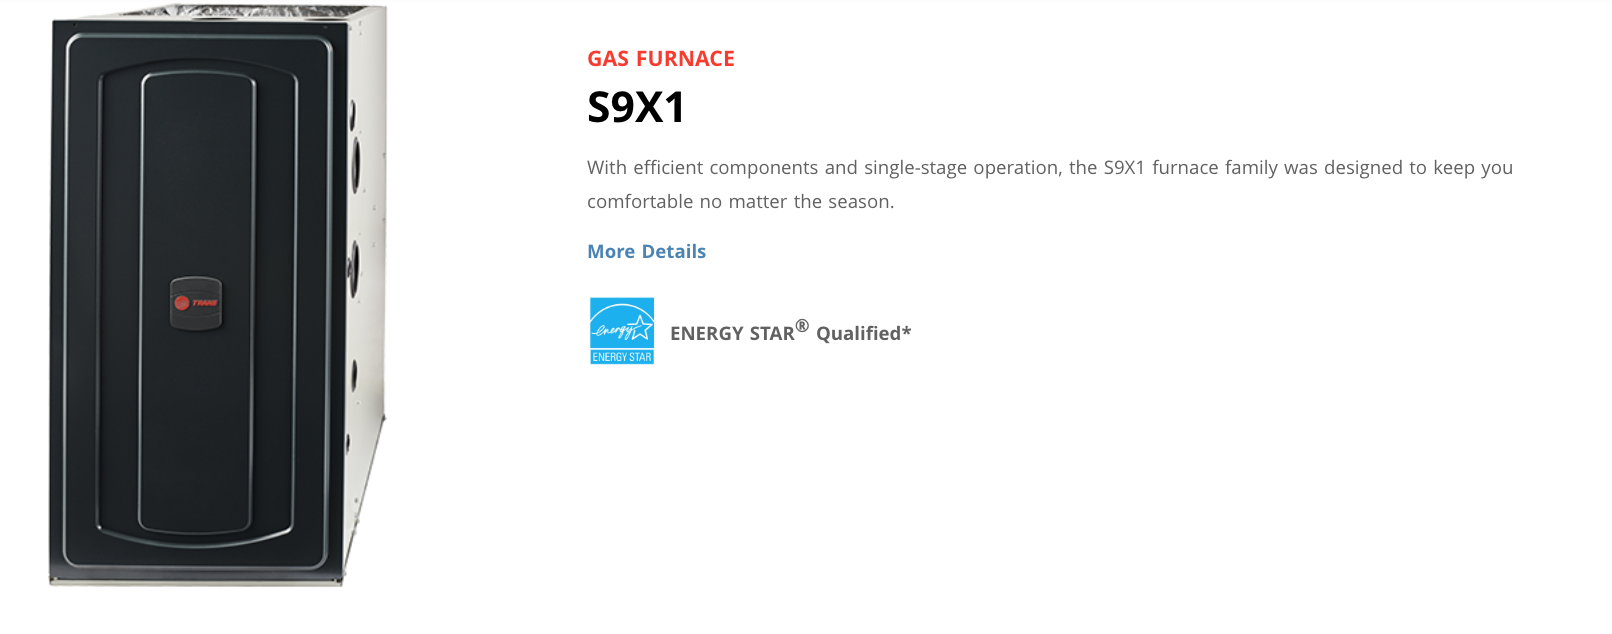 Trane S9X1 Gas Furnace. 